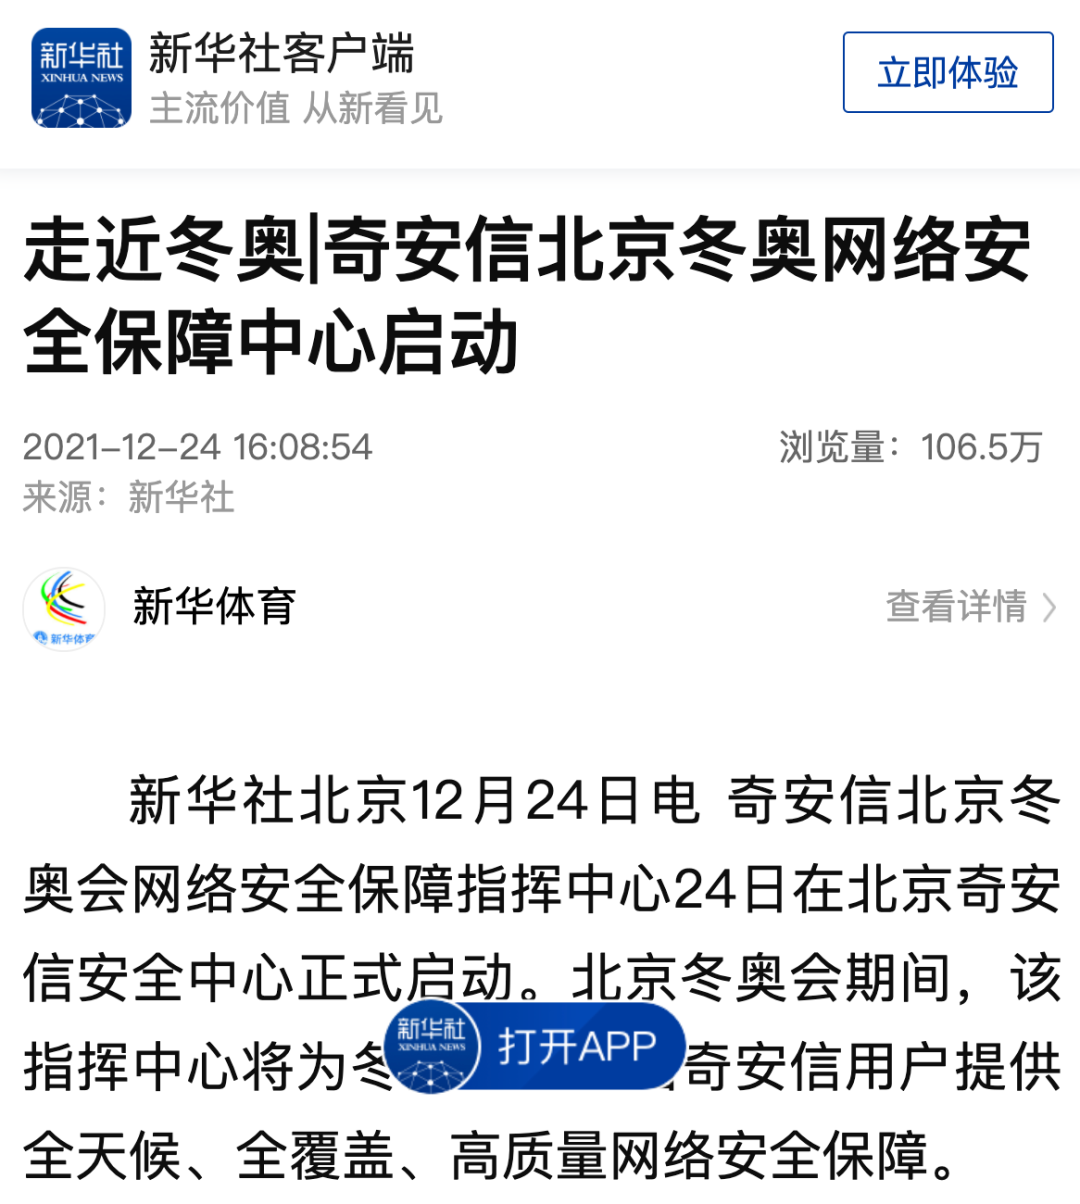 奇安信北京冬奥网络安全保障中心启动